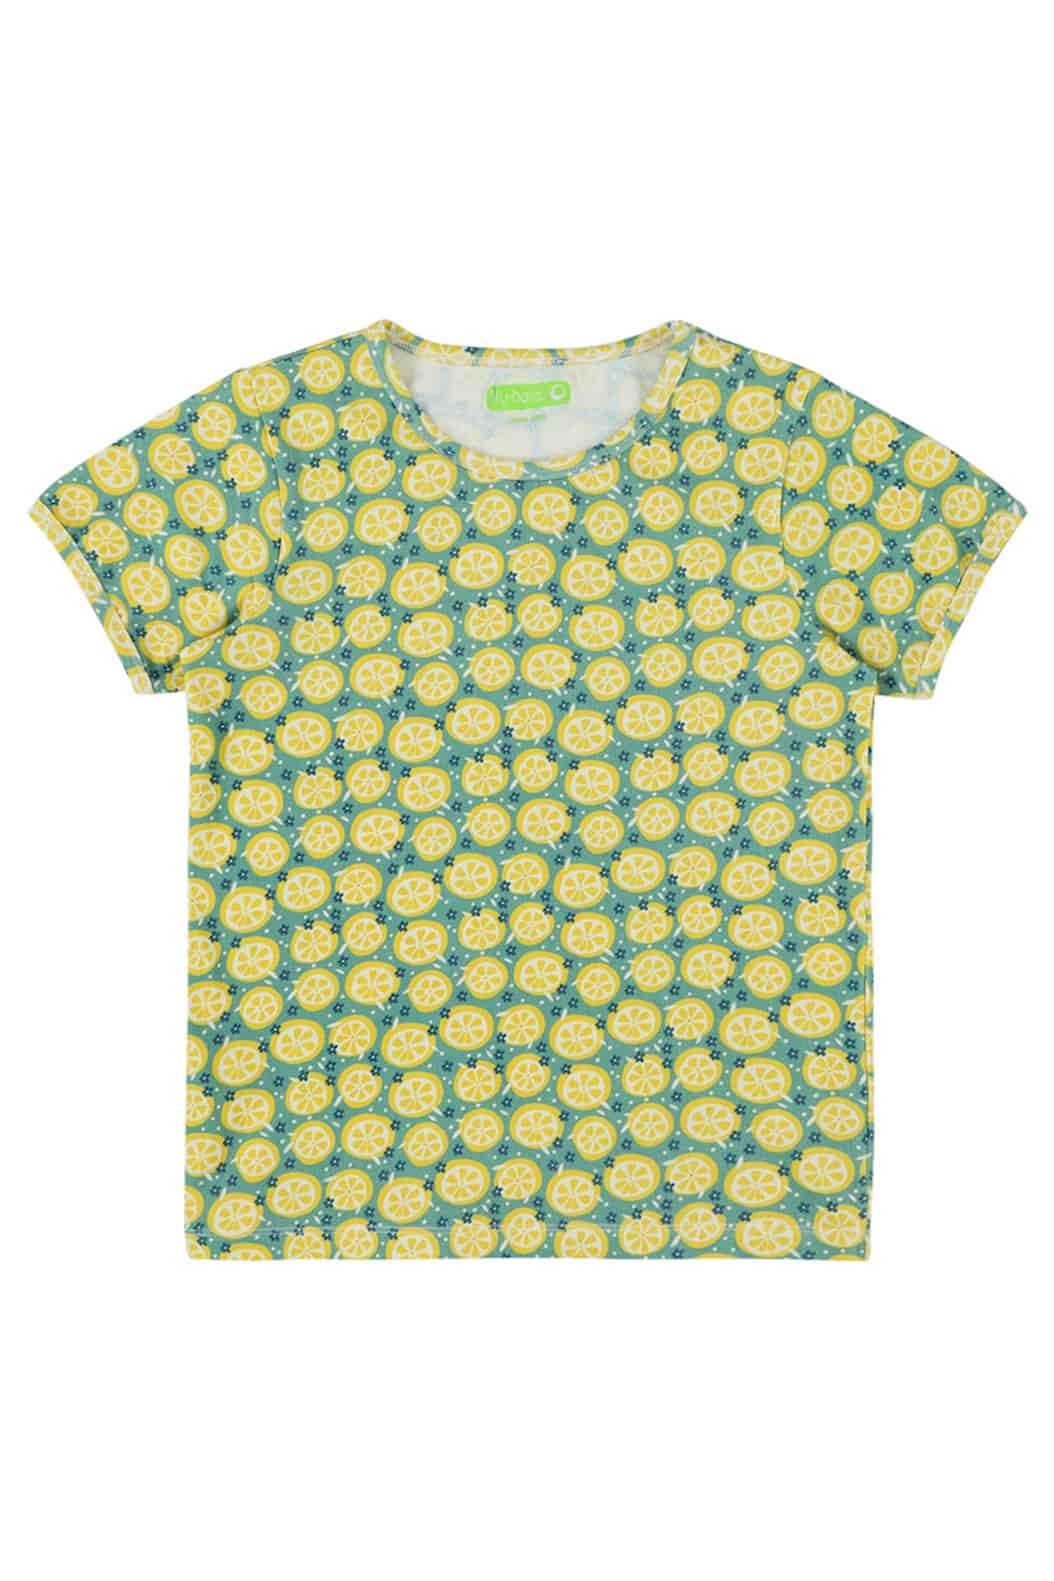 Leo T-Shirt Lemon Slices 